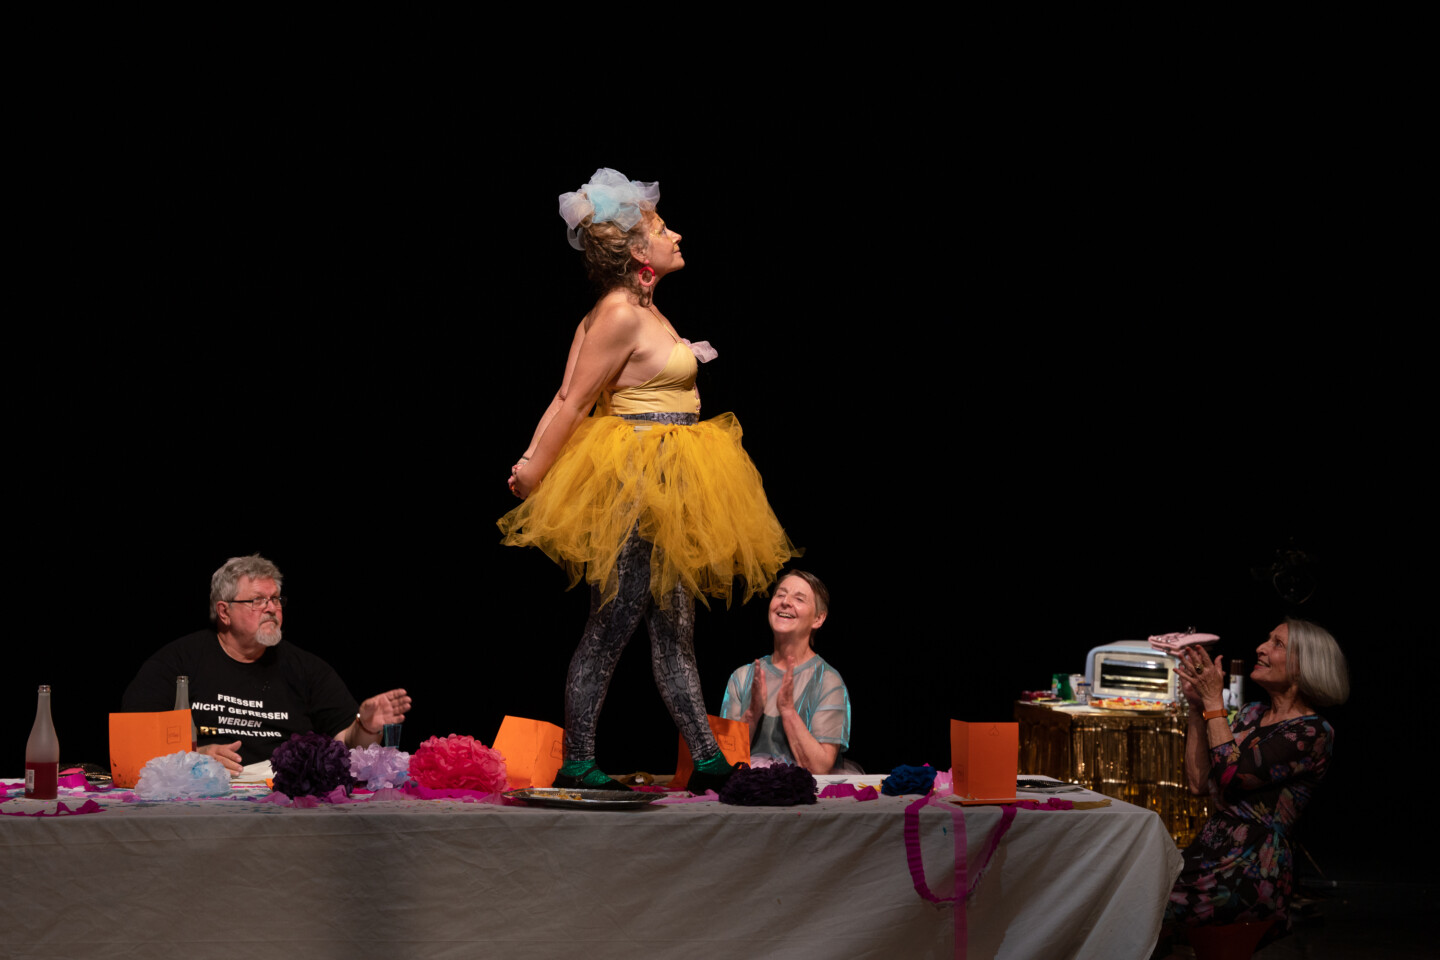 Bühnenfoto aus "Wir hatten die Zeit unseres Lebens" von Stefan Mießeler. Eine grauhaarige Frau in einem gelben Kleid mit Tütü, die auf einem Tisch steht, um den herum Menschen sitzen und ihr applaudieren.